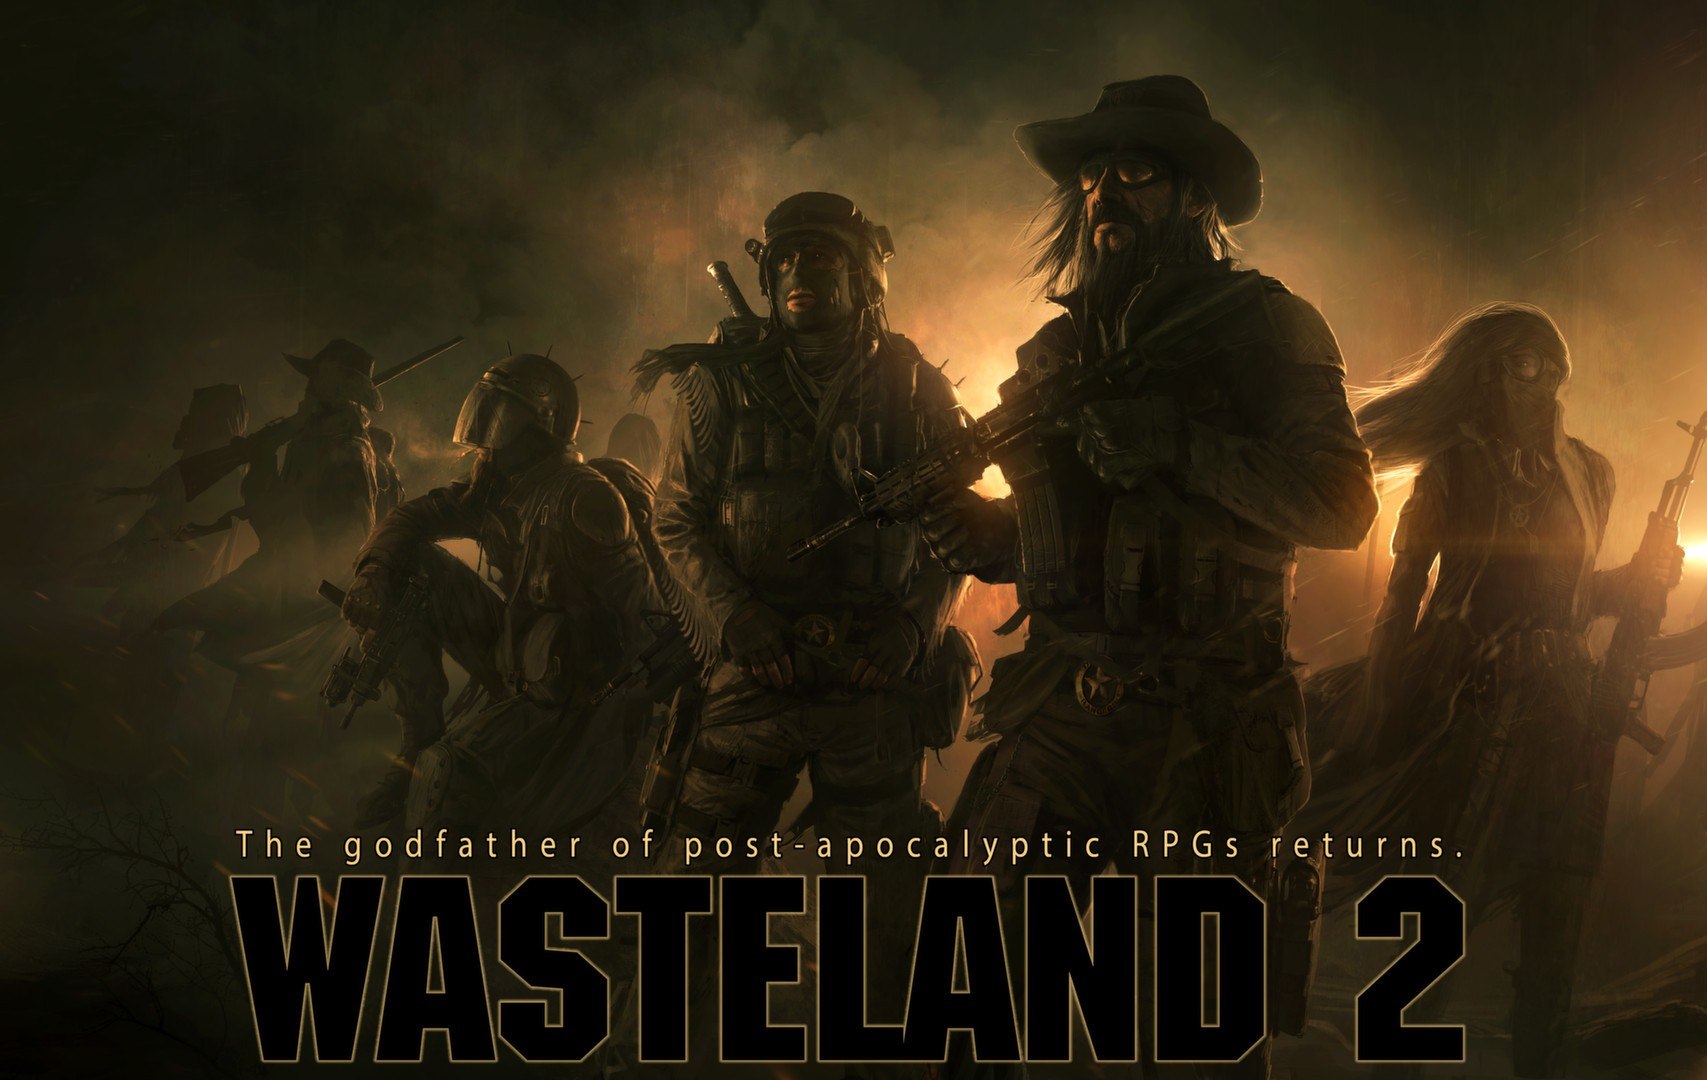 Wasteland 2: Director's Cut - Classic Edition Steam CD Key 11.19$